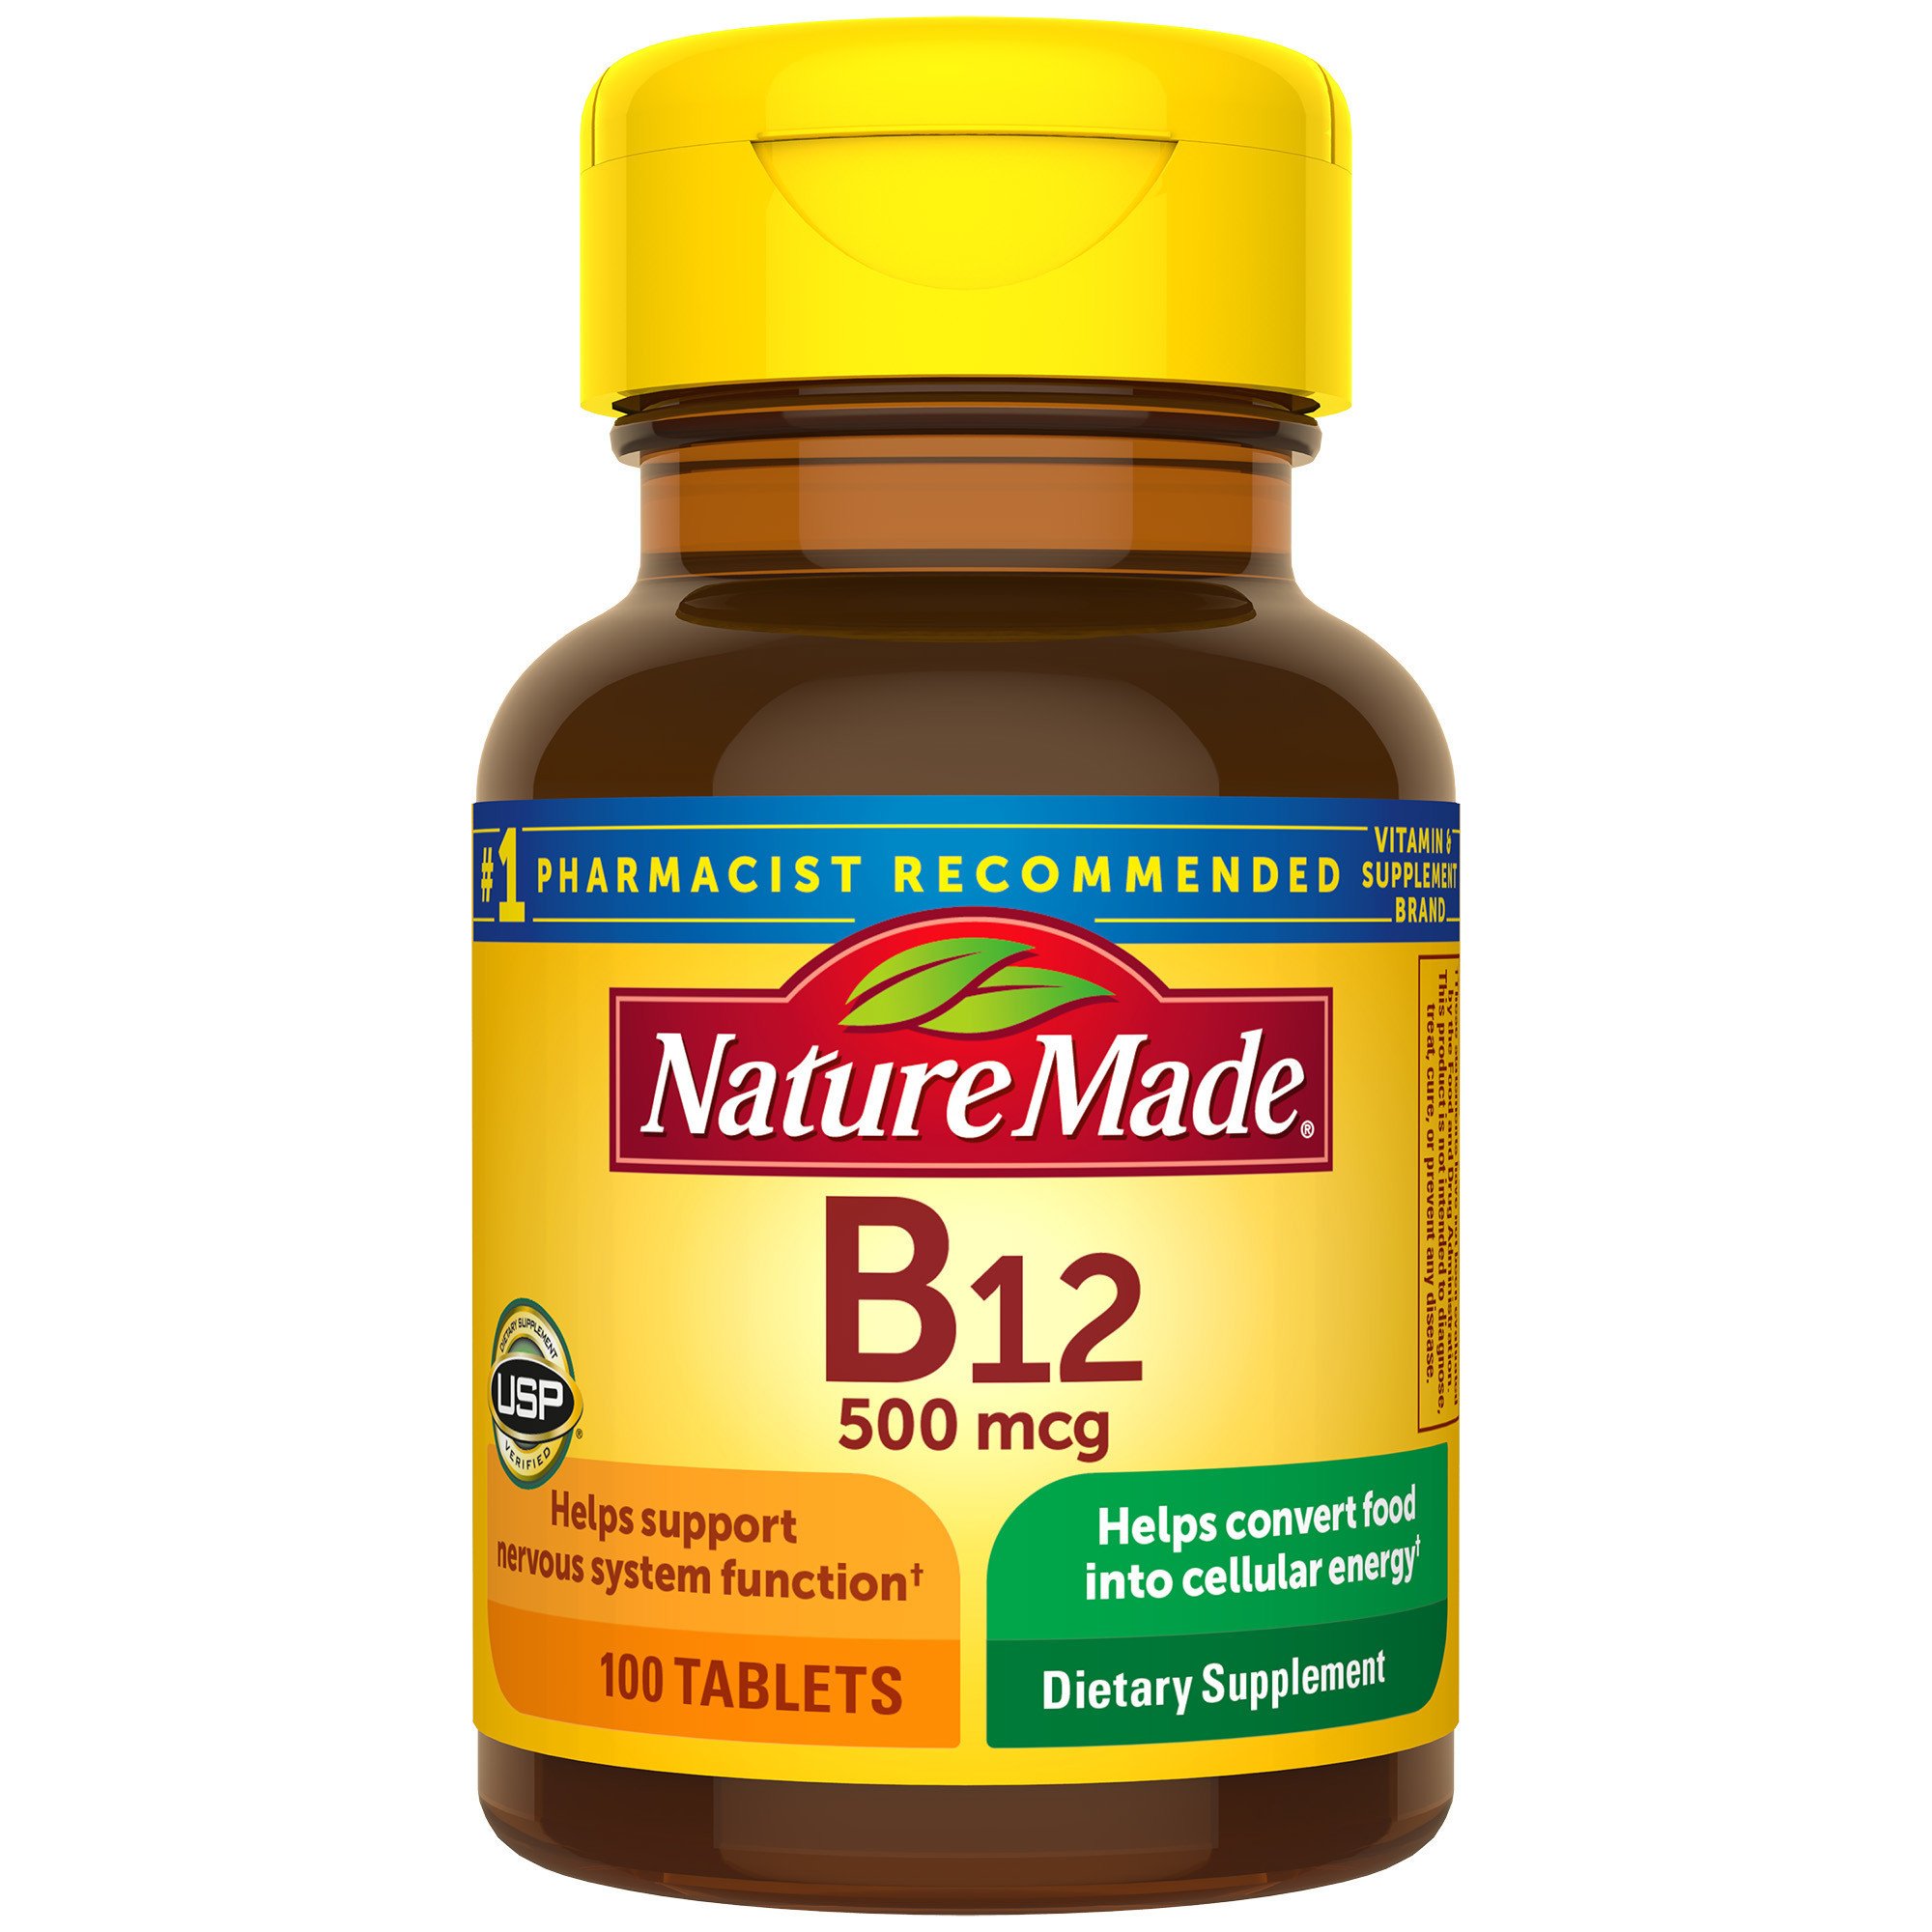 Nature Made Vitamin B-12 500 mg Tablets - Shop & Supplements at H-E-B